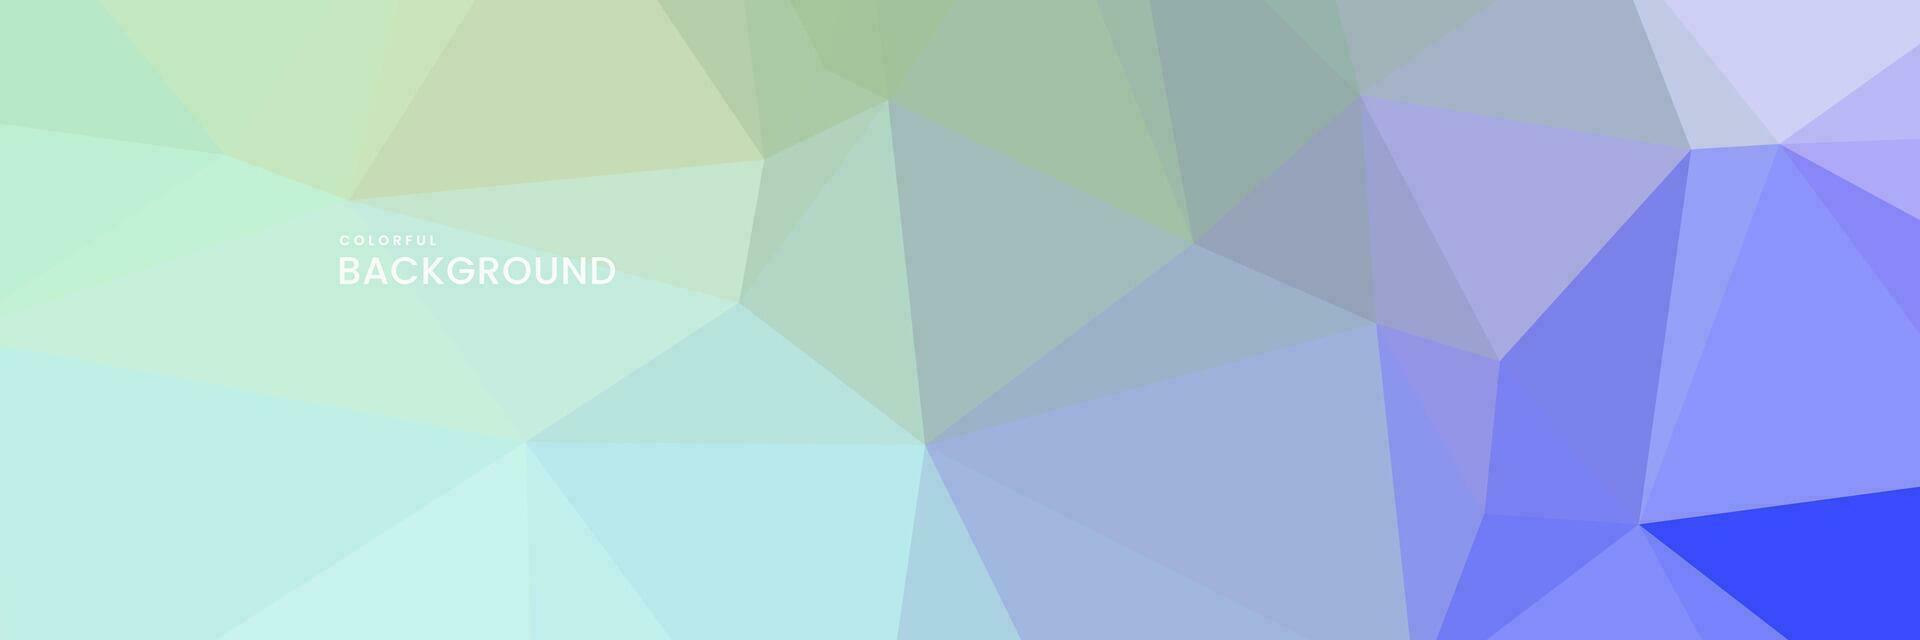 abstrato criativo geométrico arte colorida fundo com triângulos vetor